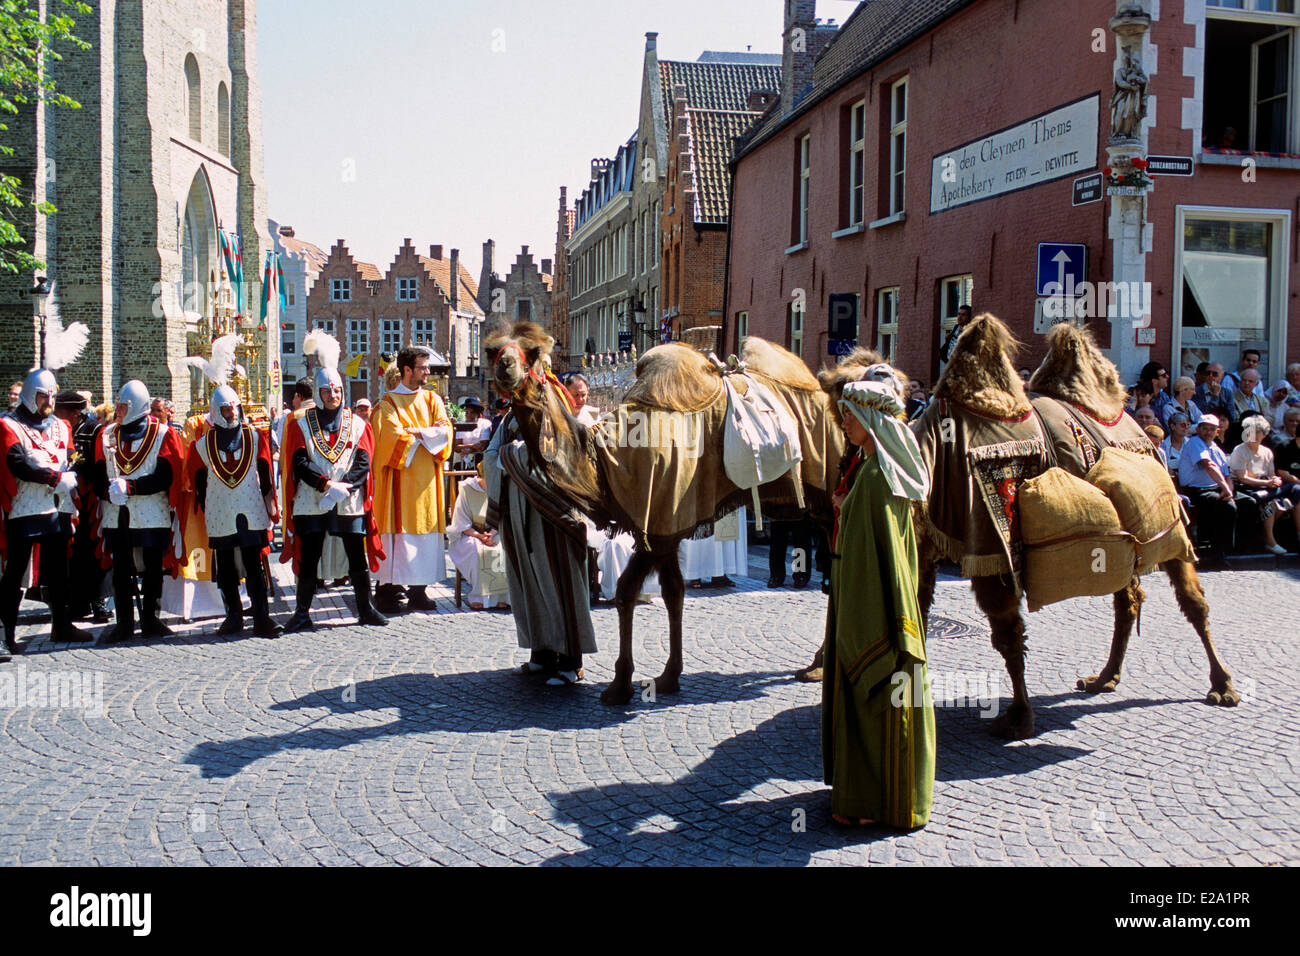 Belgique, Flandre occidentale, Bruges, défilé des rois mages rois dans les rues de Bruges pour célébrer Pâques Banque D'Images